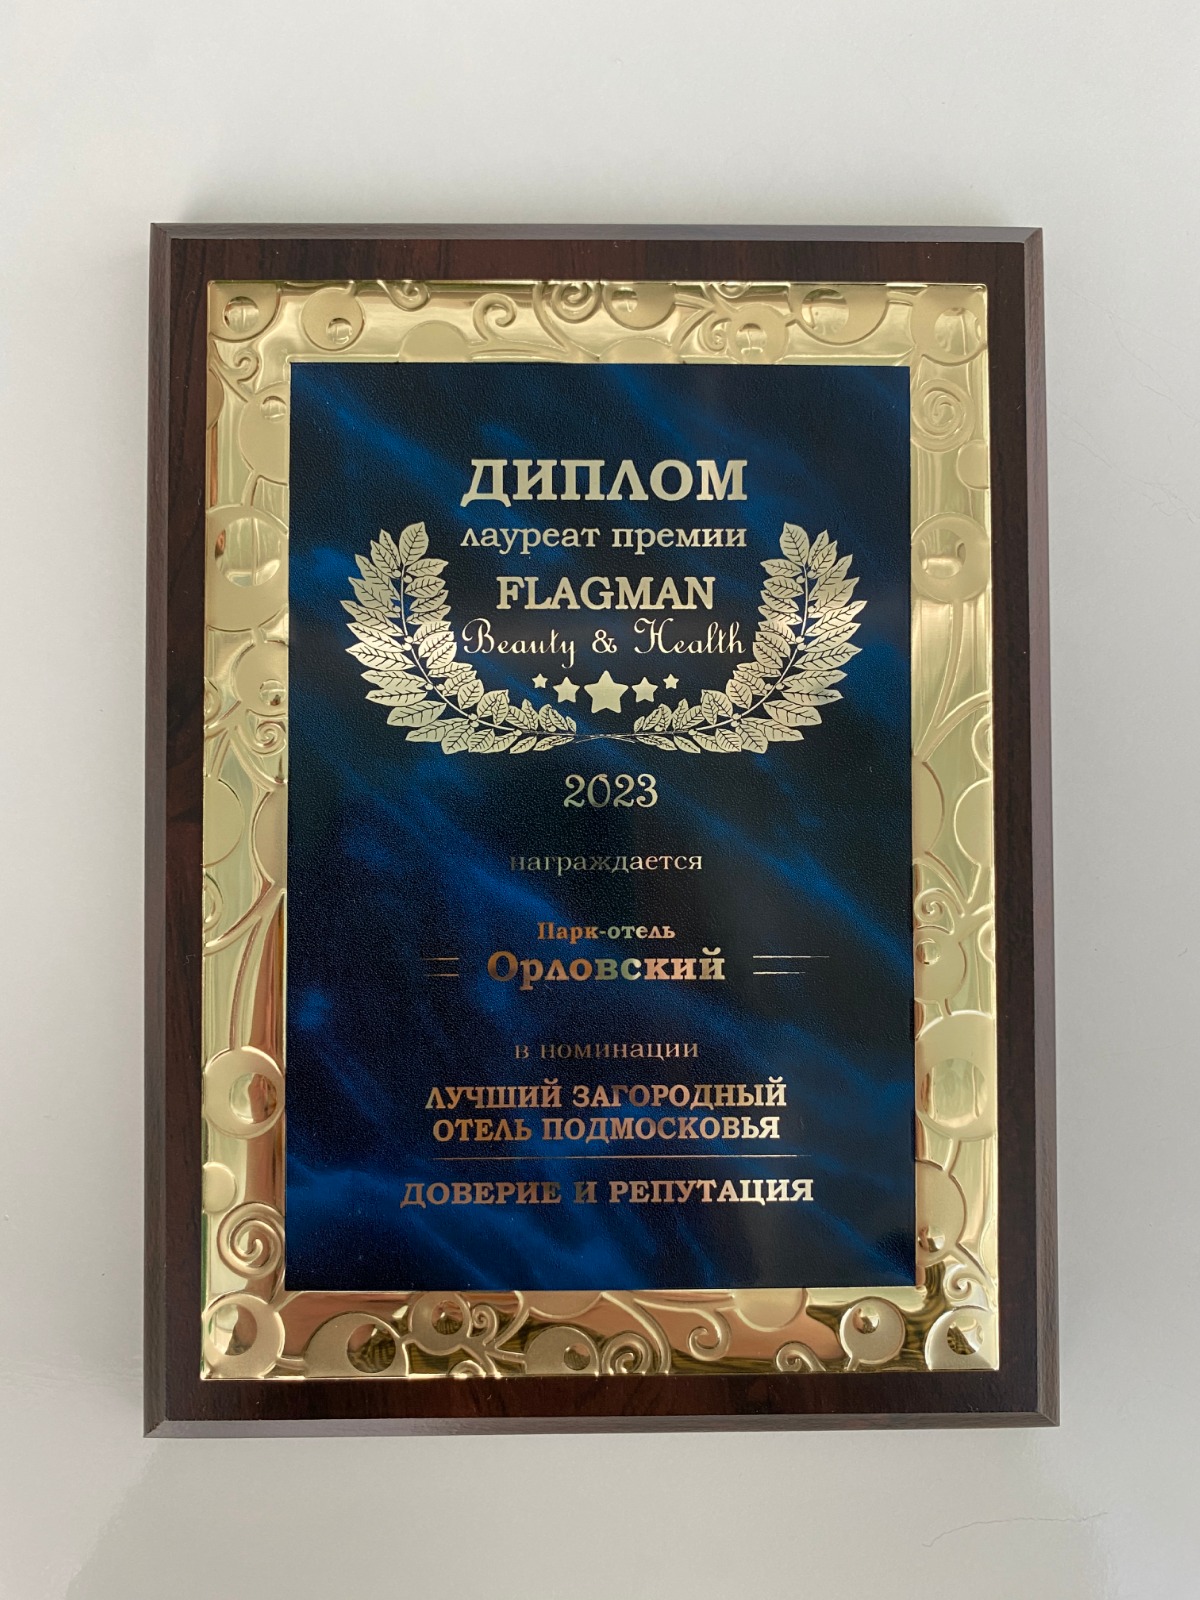 парк-отель ОРЛОВСКИЙ — Победитель в номинации «Лучший загородный отель Подмосковья.